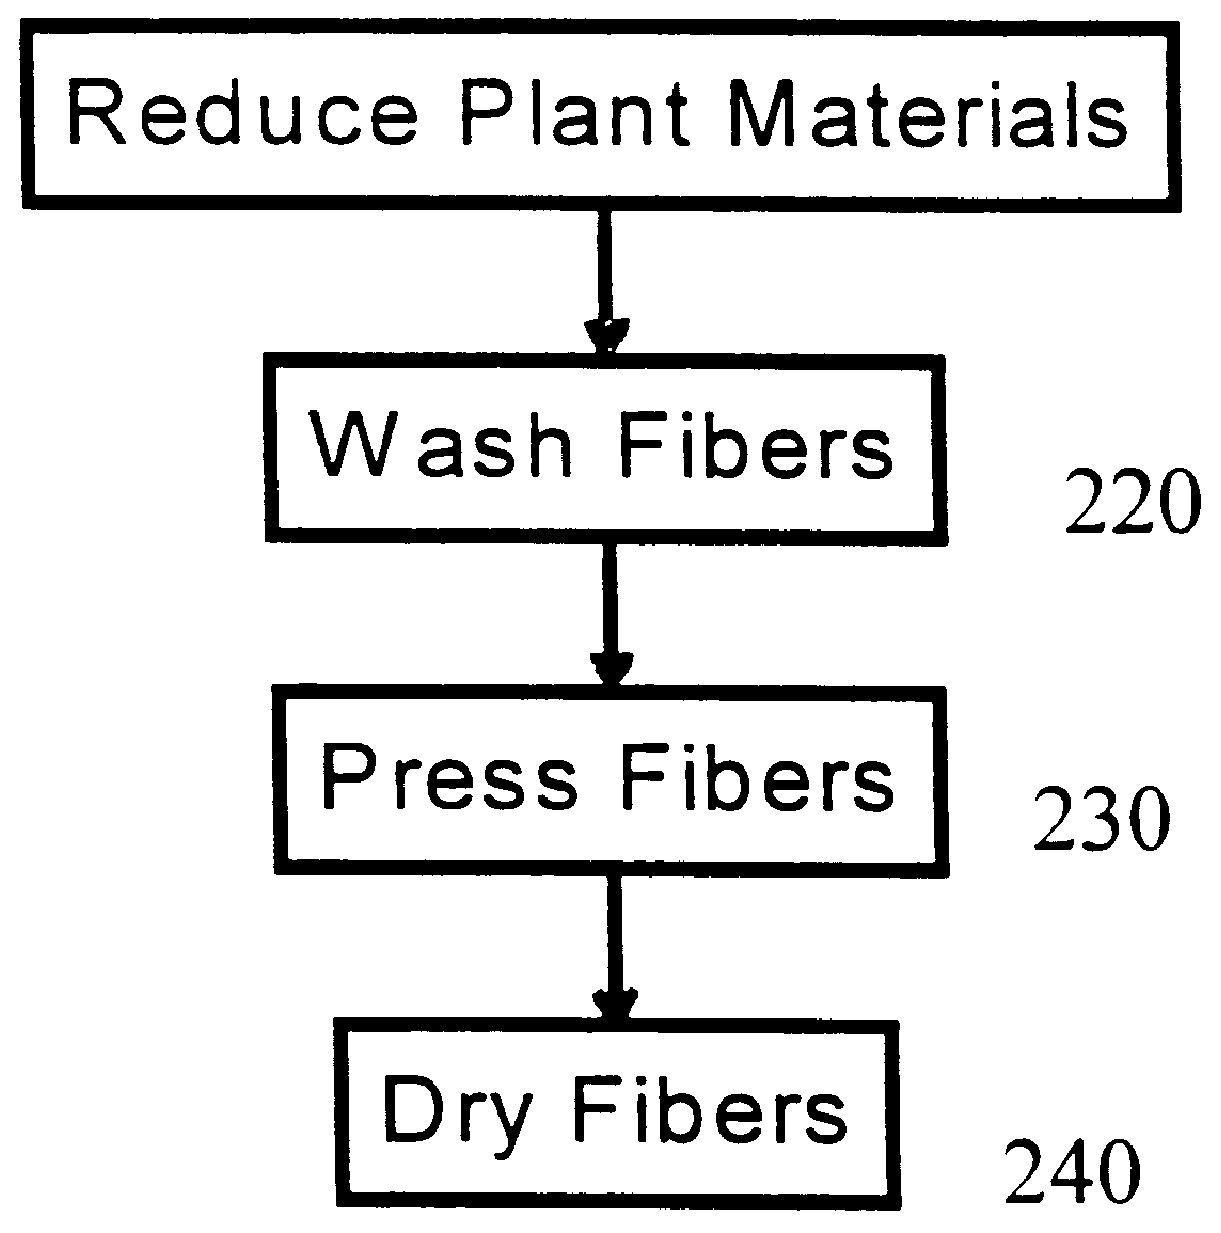 Process for sorbing liquids using tropical fibers